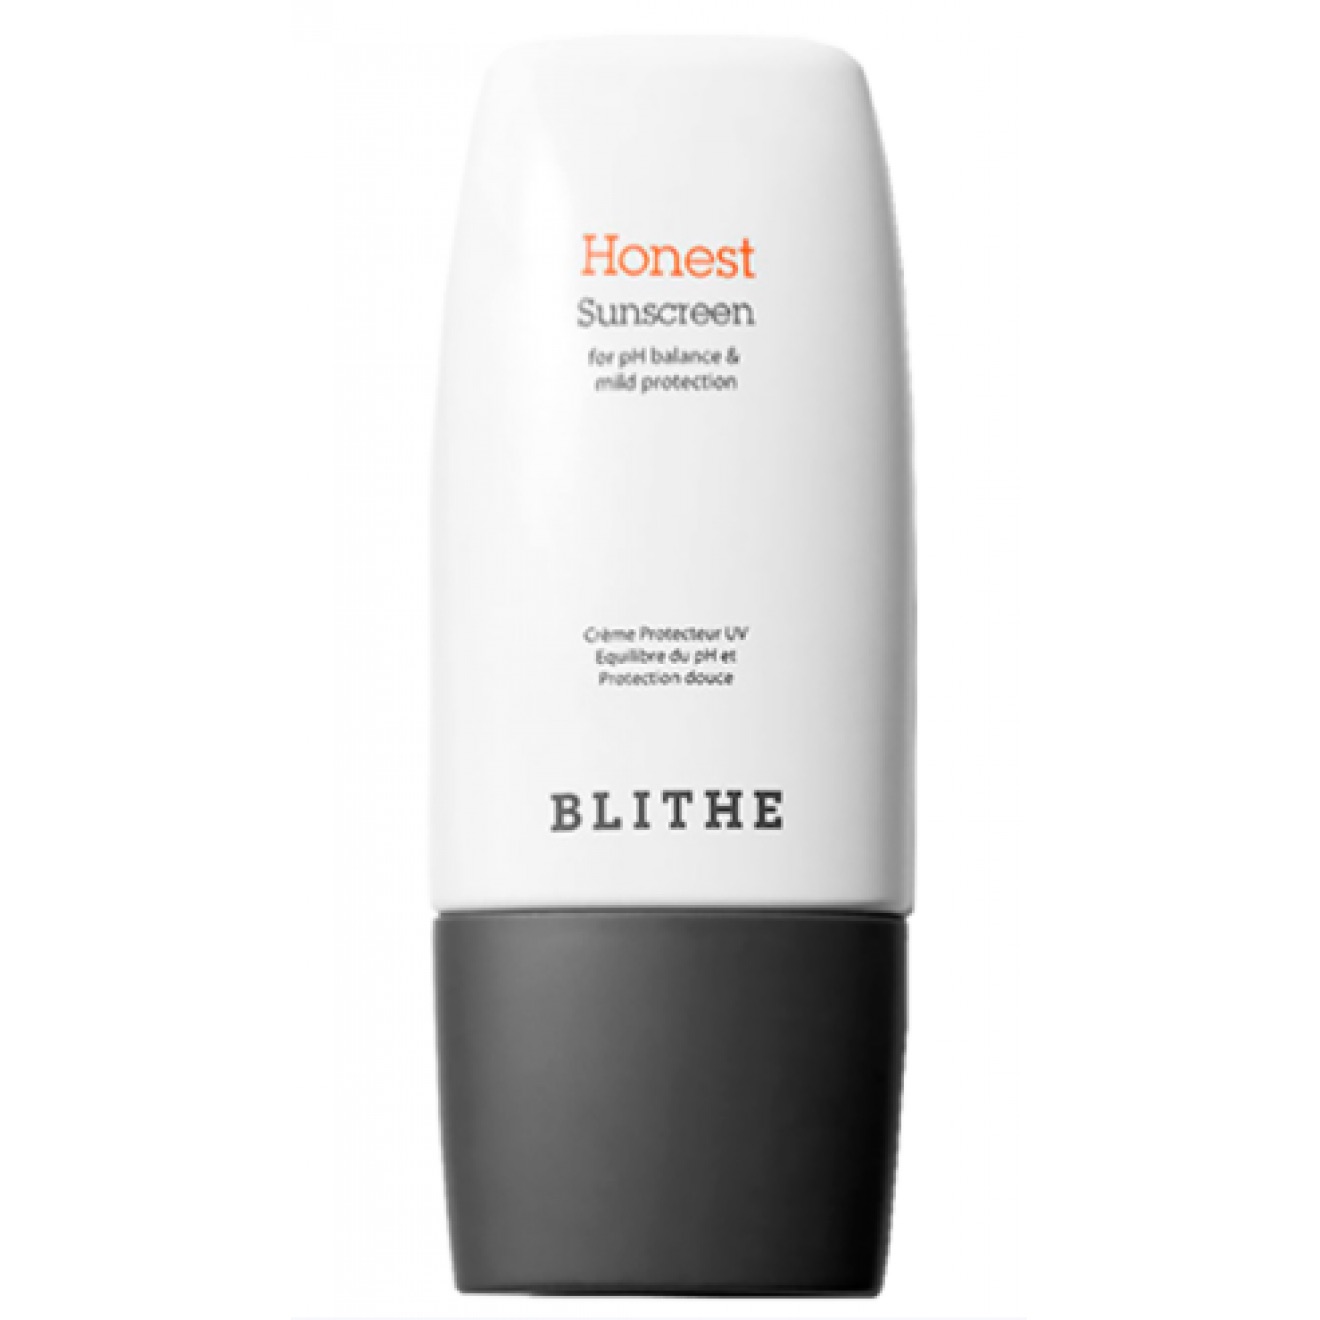 BLITHE Honest Sunscreen SPF50+ РА++++.